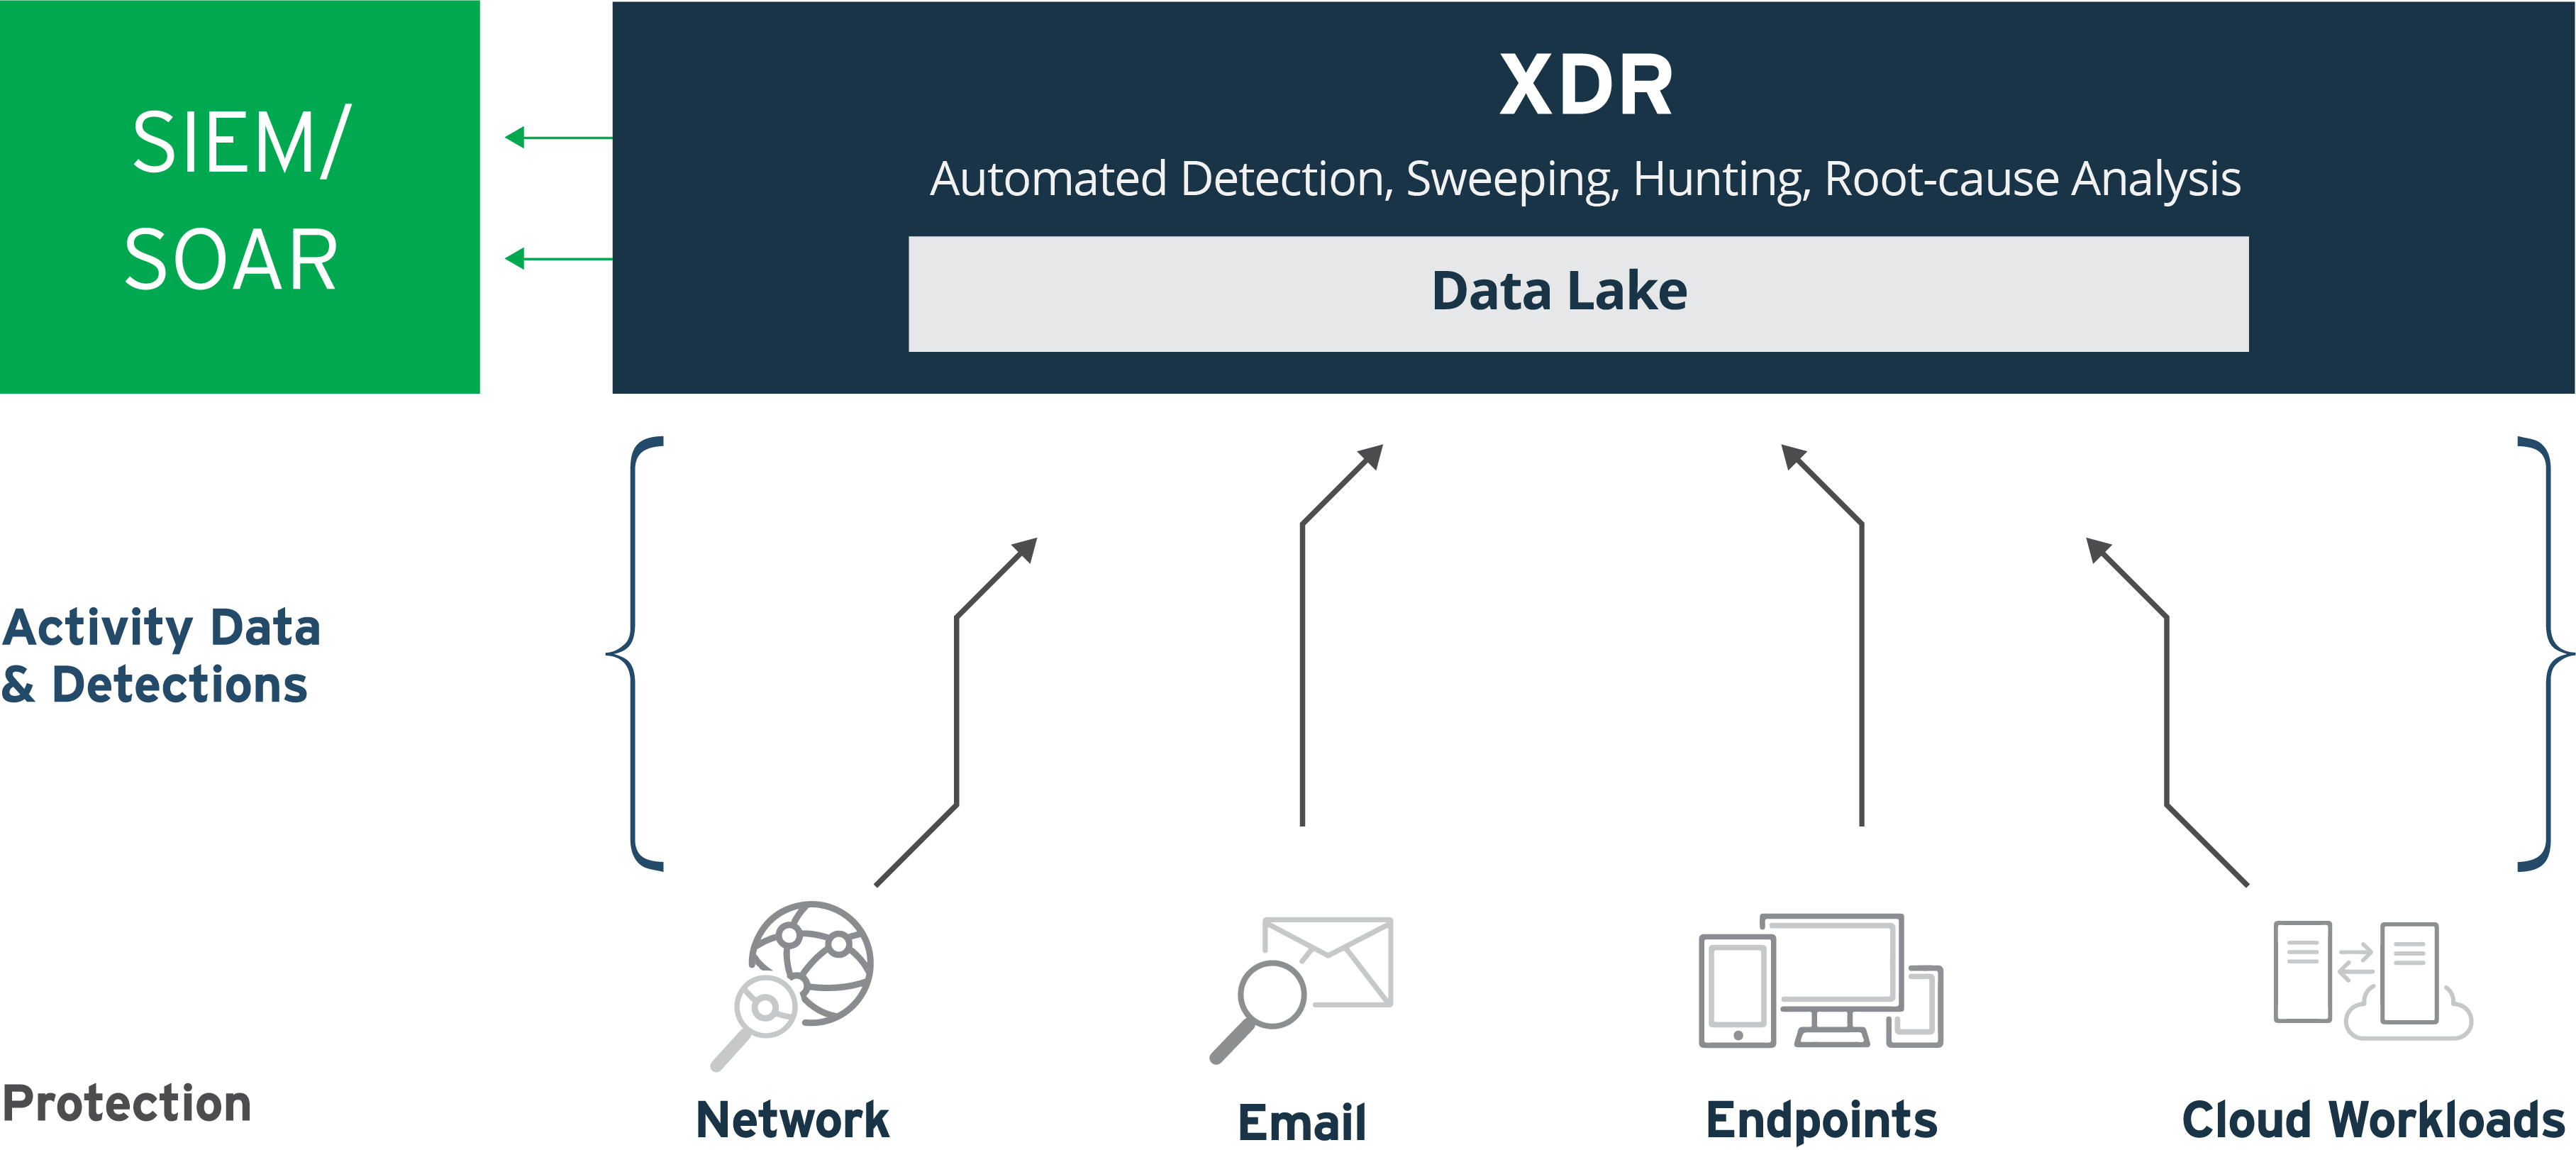 Jest to obraz różnych warstw zabezpieczeń, które mogą dostarczać dane do XDR